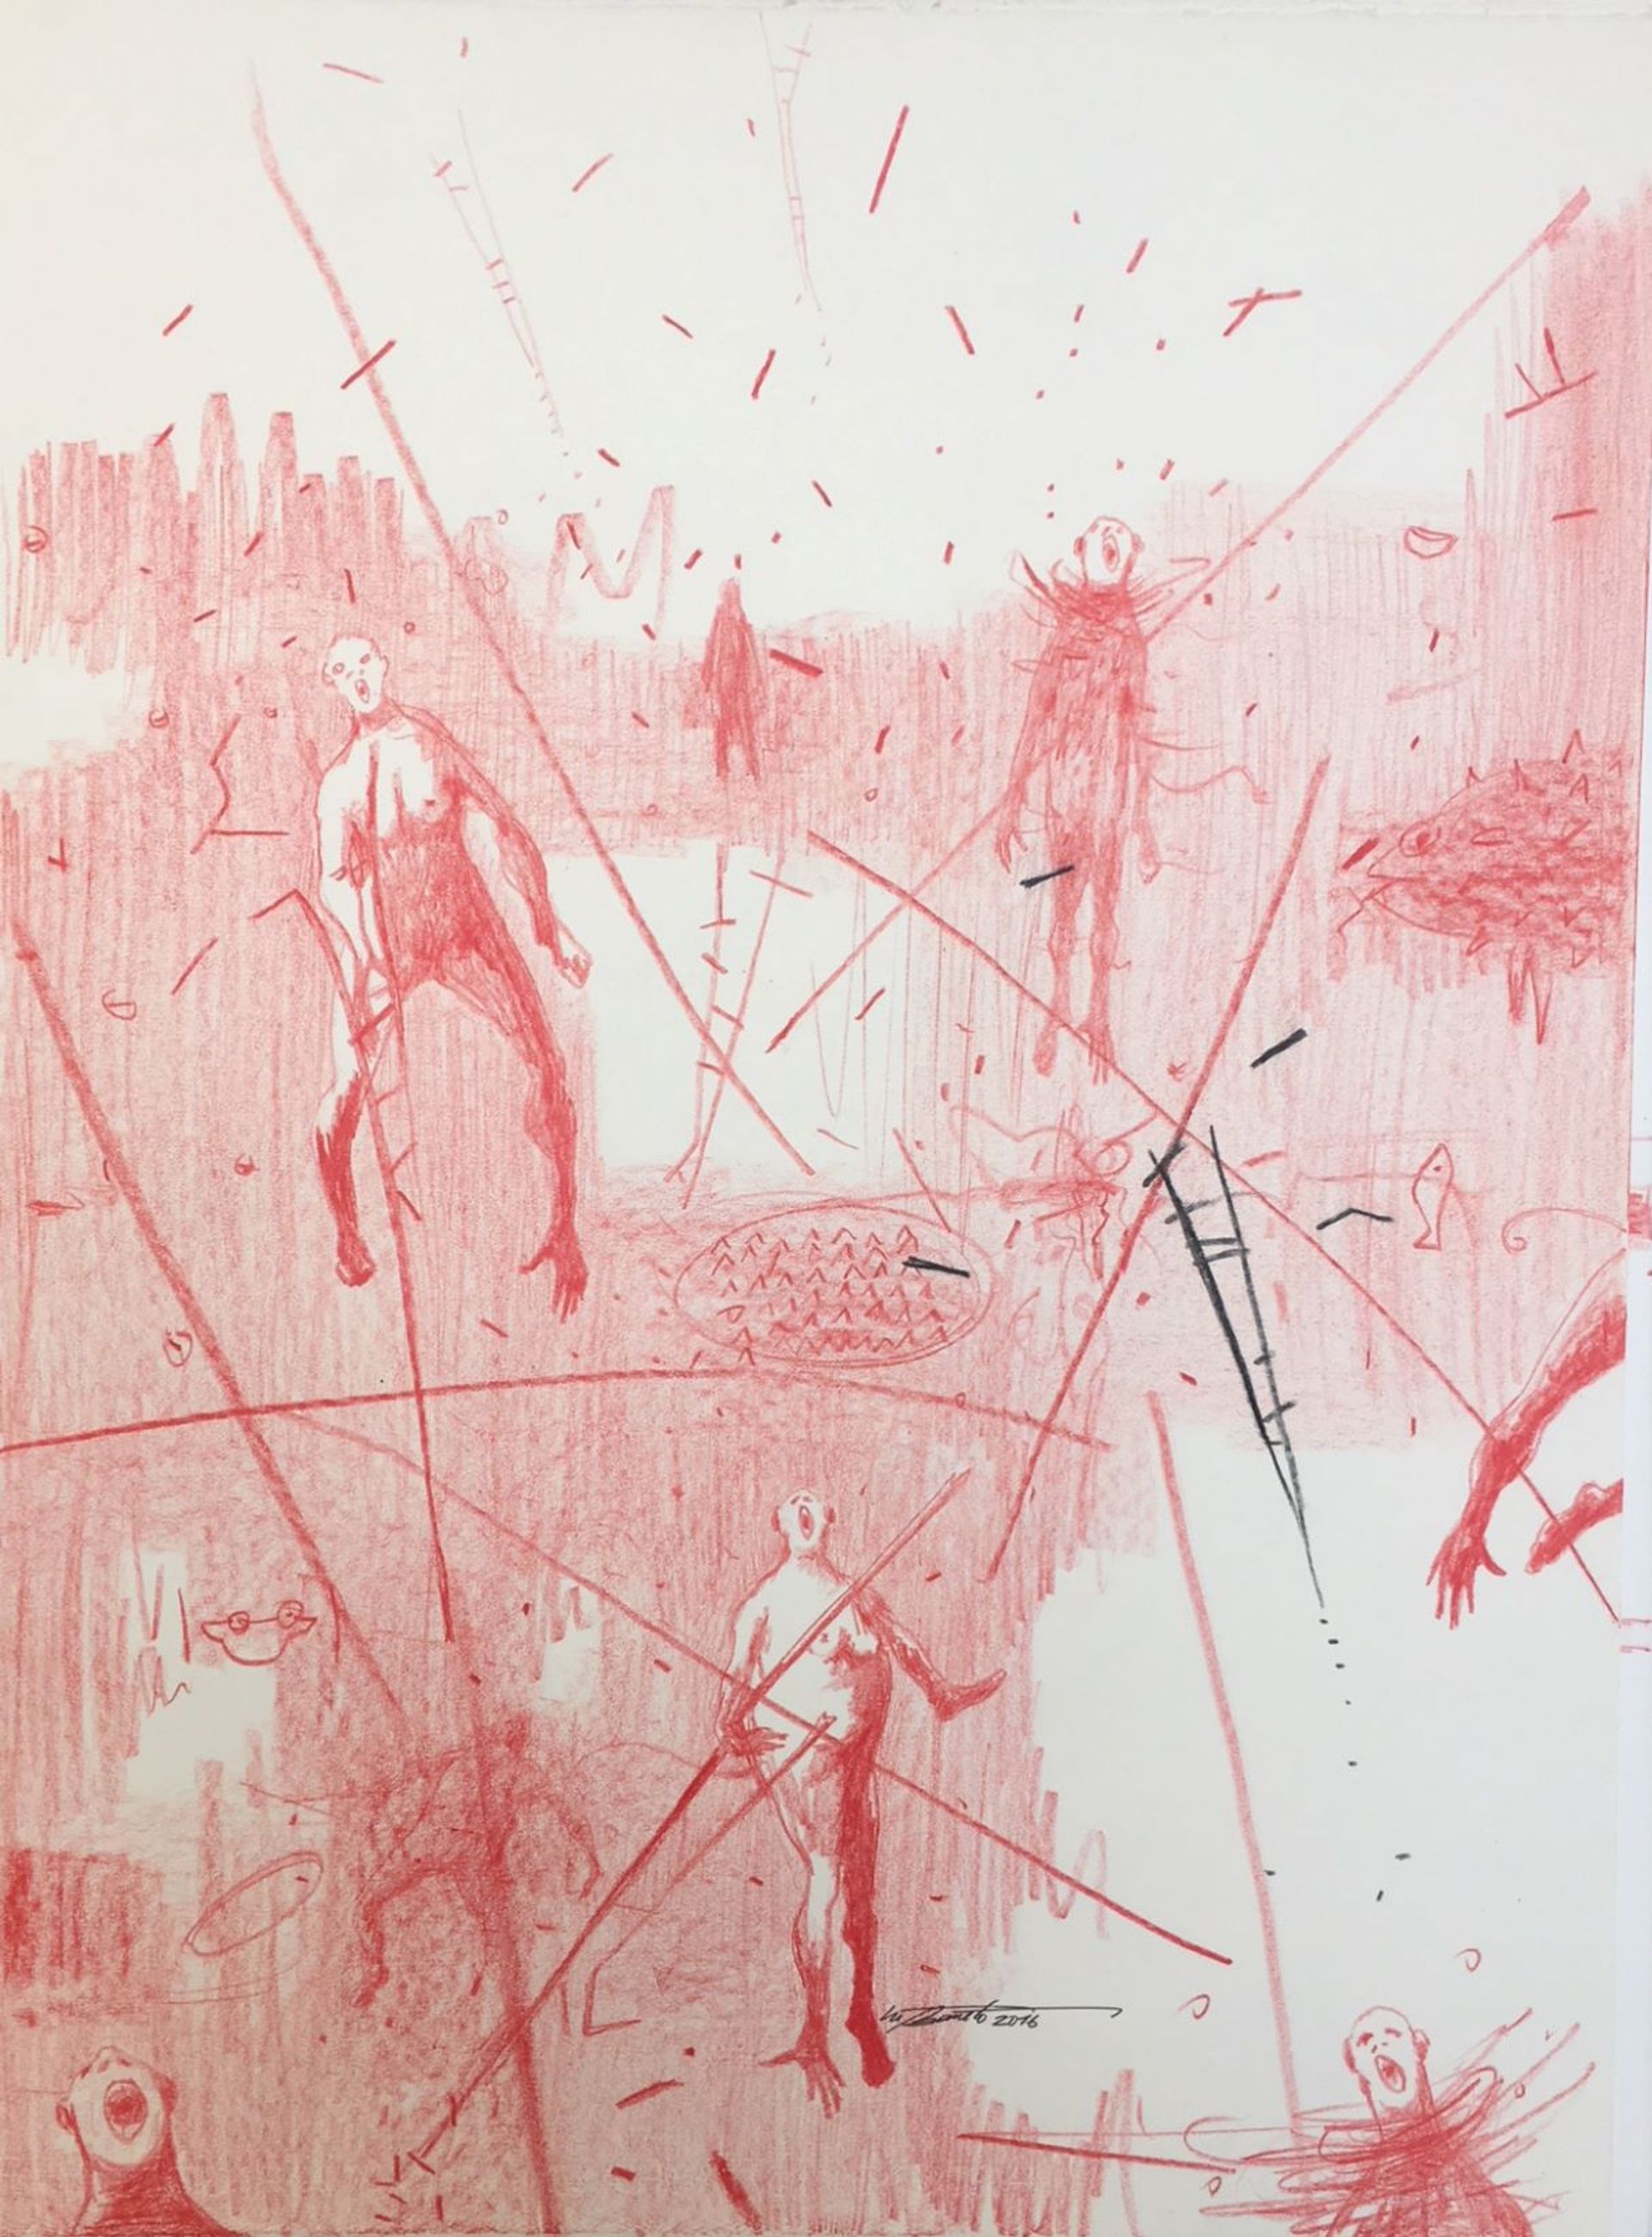 Nú Barreto, Vie de poisson, 2016, crayon céramique rouge sur papier. Prix : 4000 euros. © Nú Barreto. Courtesy galerie Nathalie Obadia, Paris/Bruxelles